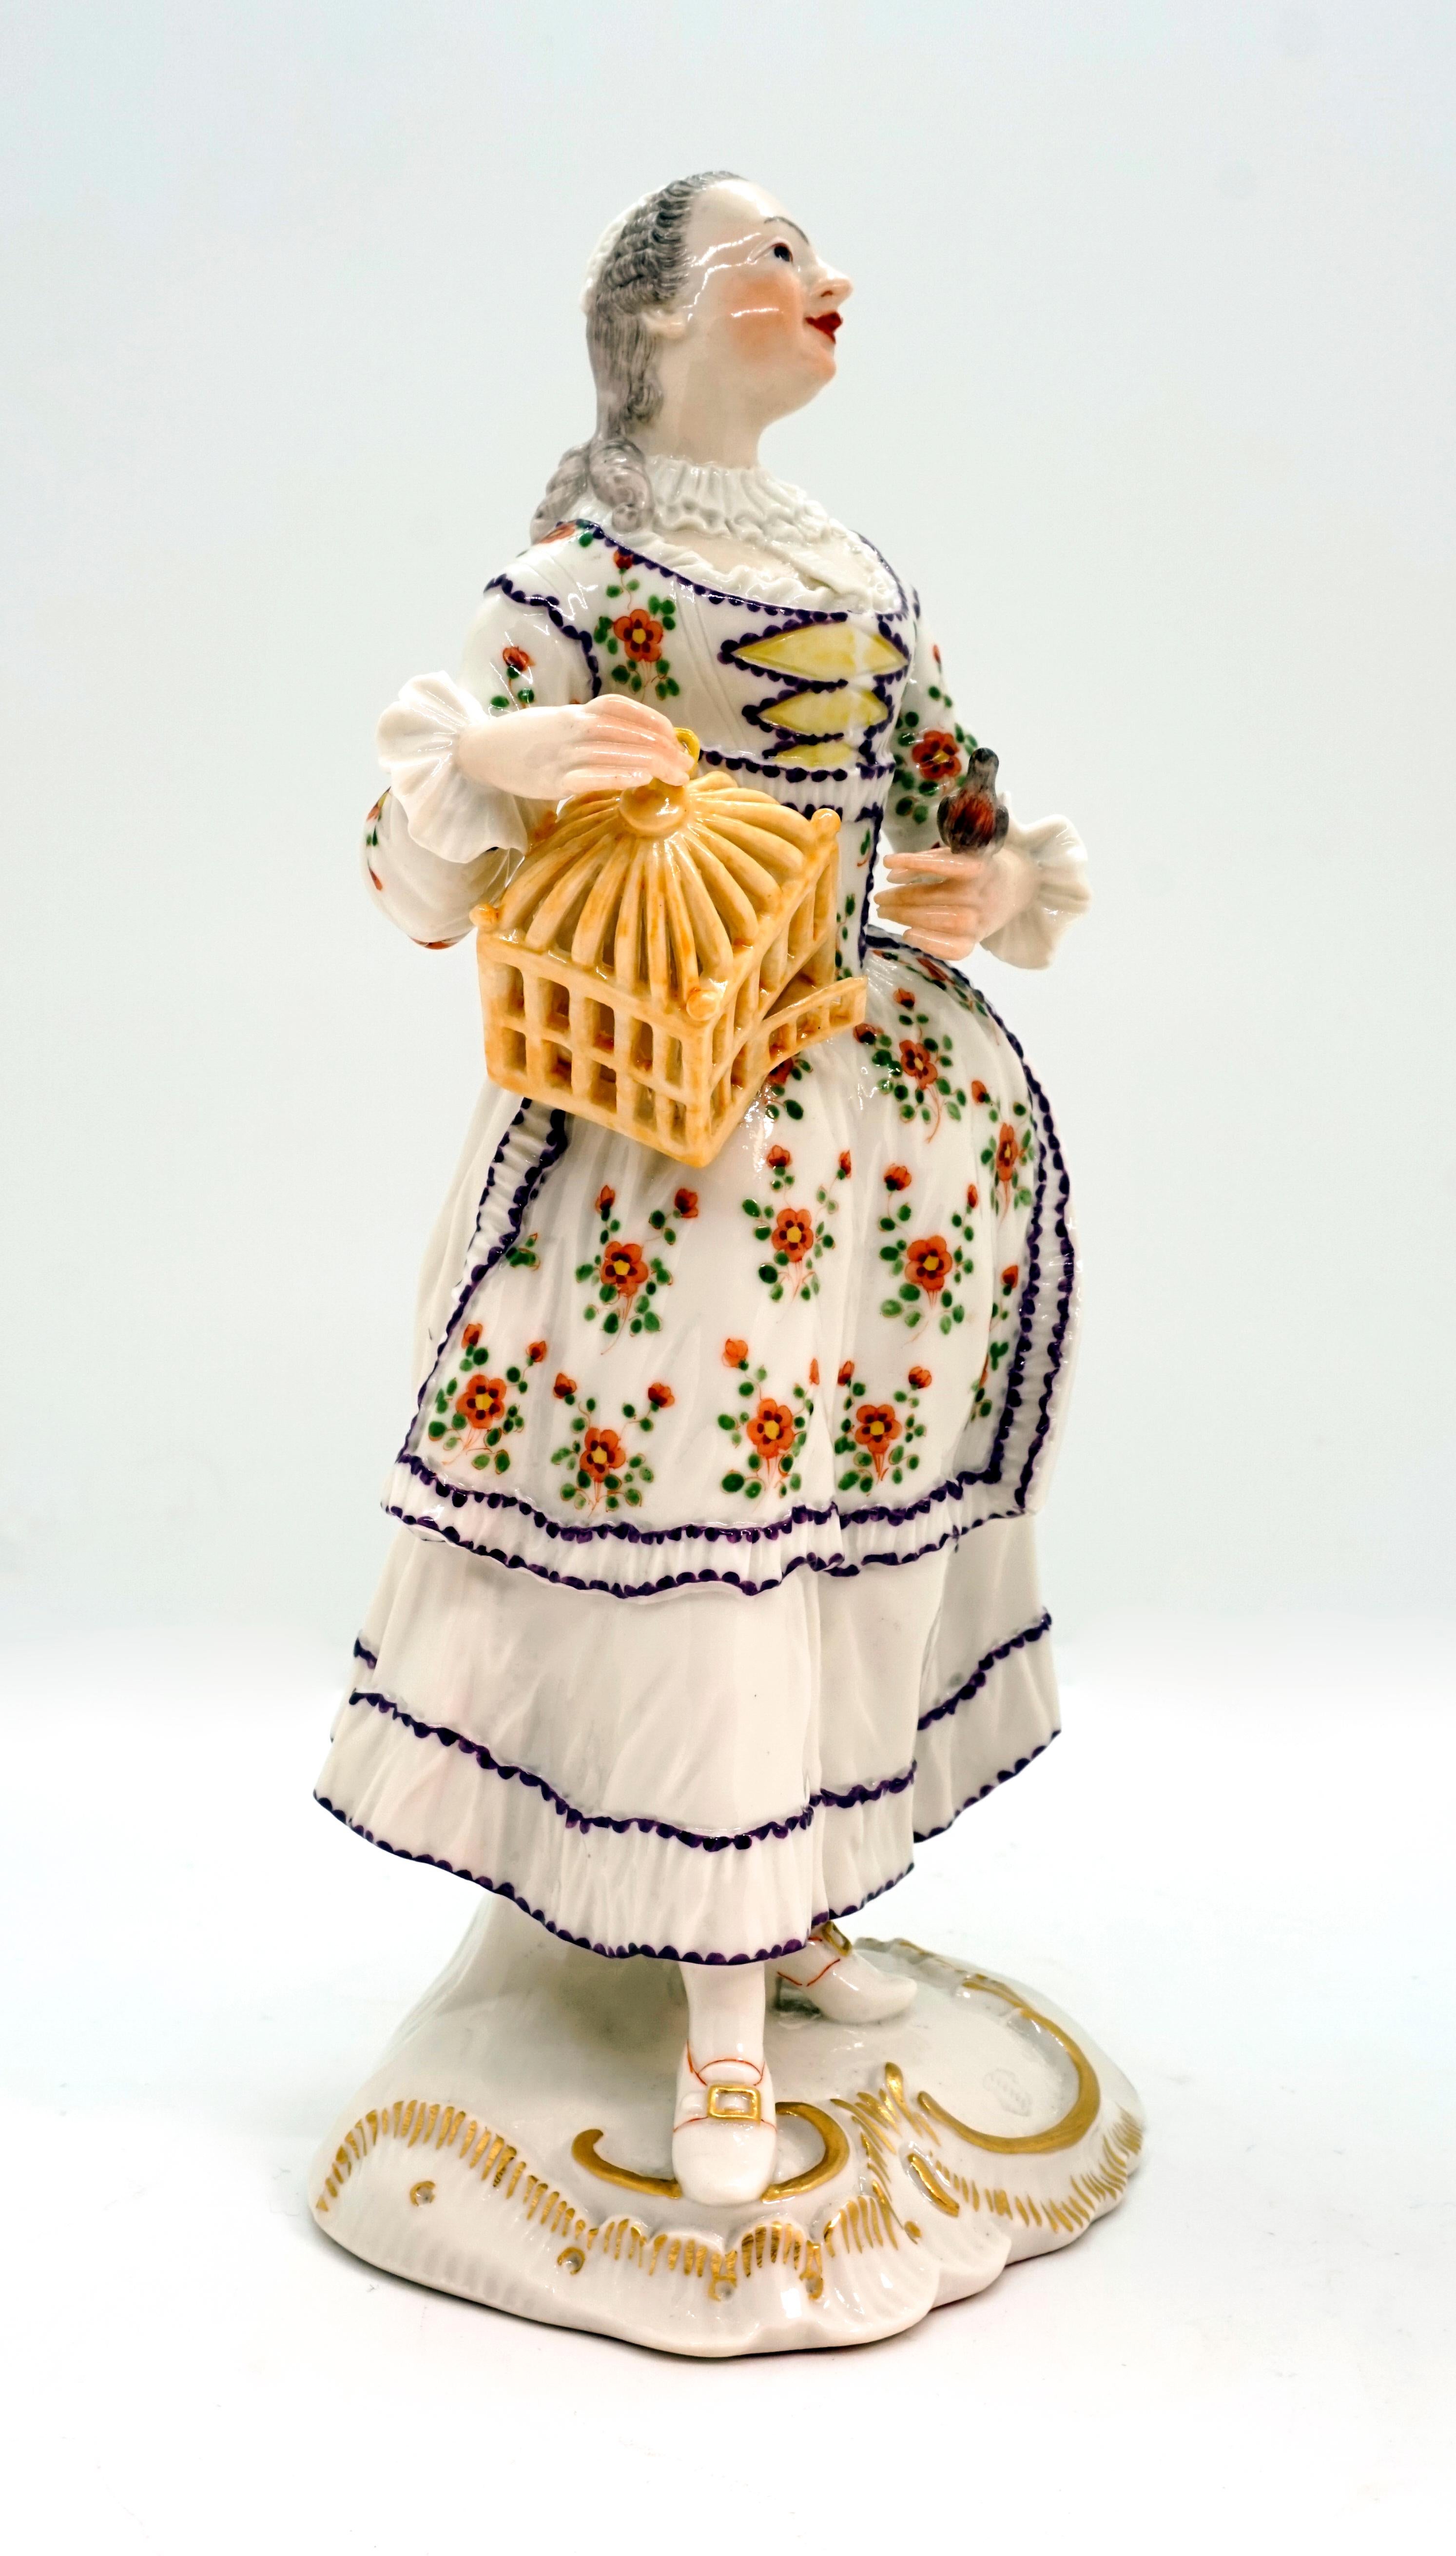 Sehr seltene Figur aus dem ehemaligen Hersteller Frankenthal Deutschland.
Die im Rokokostil gekleidete Dame (weißes Kleid mit geblümtem Mieder und Schürze, weiße Haube) hält mit der rechten Hand einen offenen, auf die Hüfte gestützten Vogelkäfig.